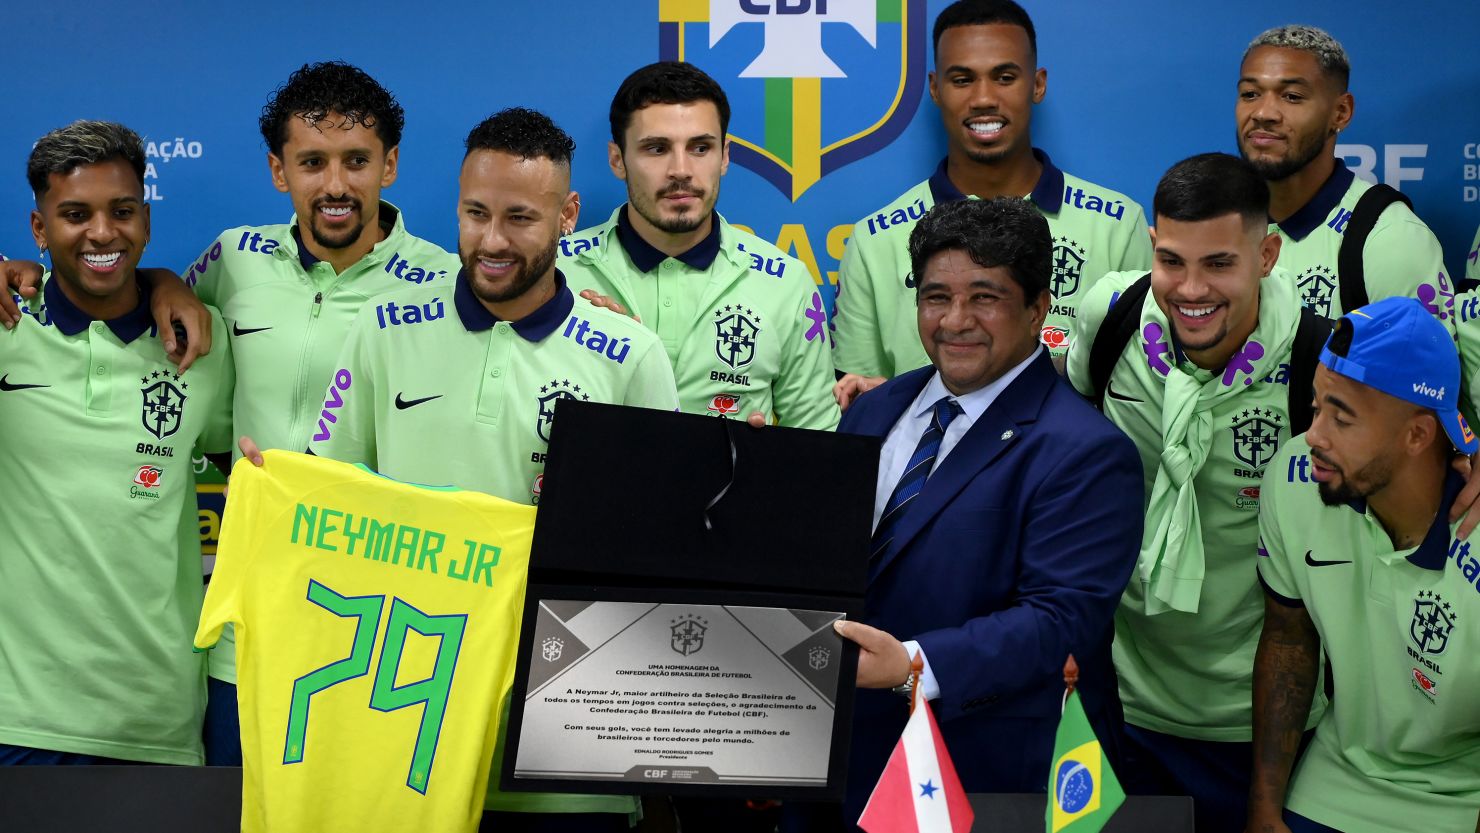 Veja a tabela dos jogos do Brasil no IFAF Américas Championship